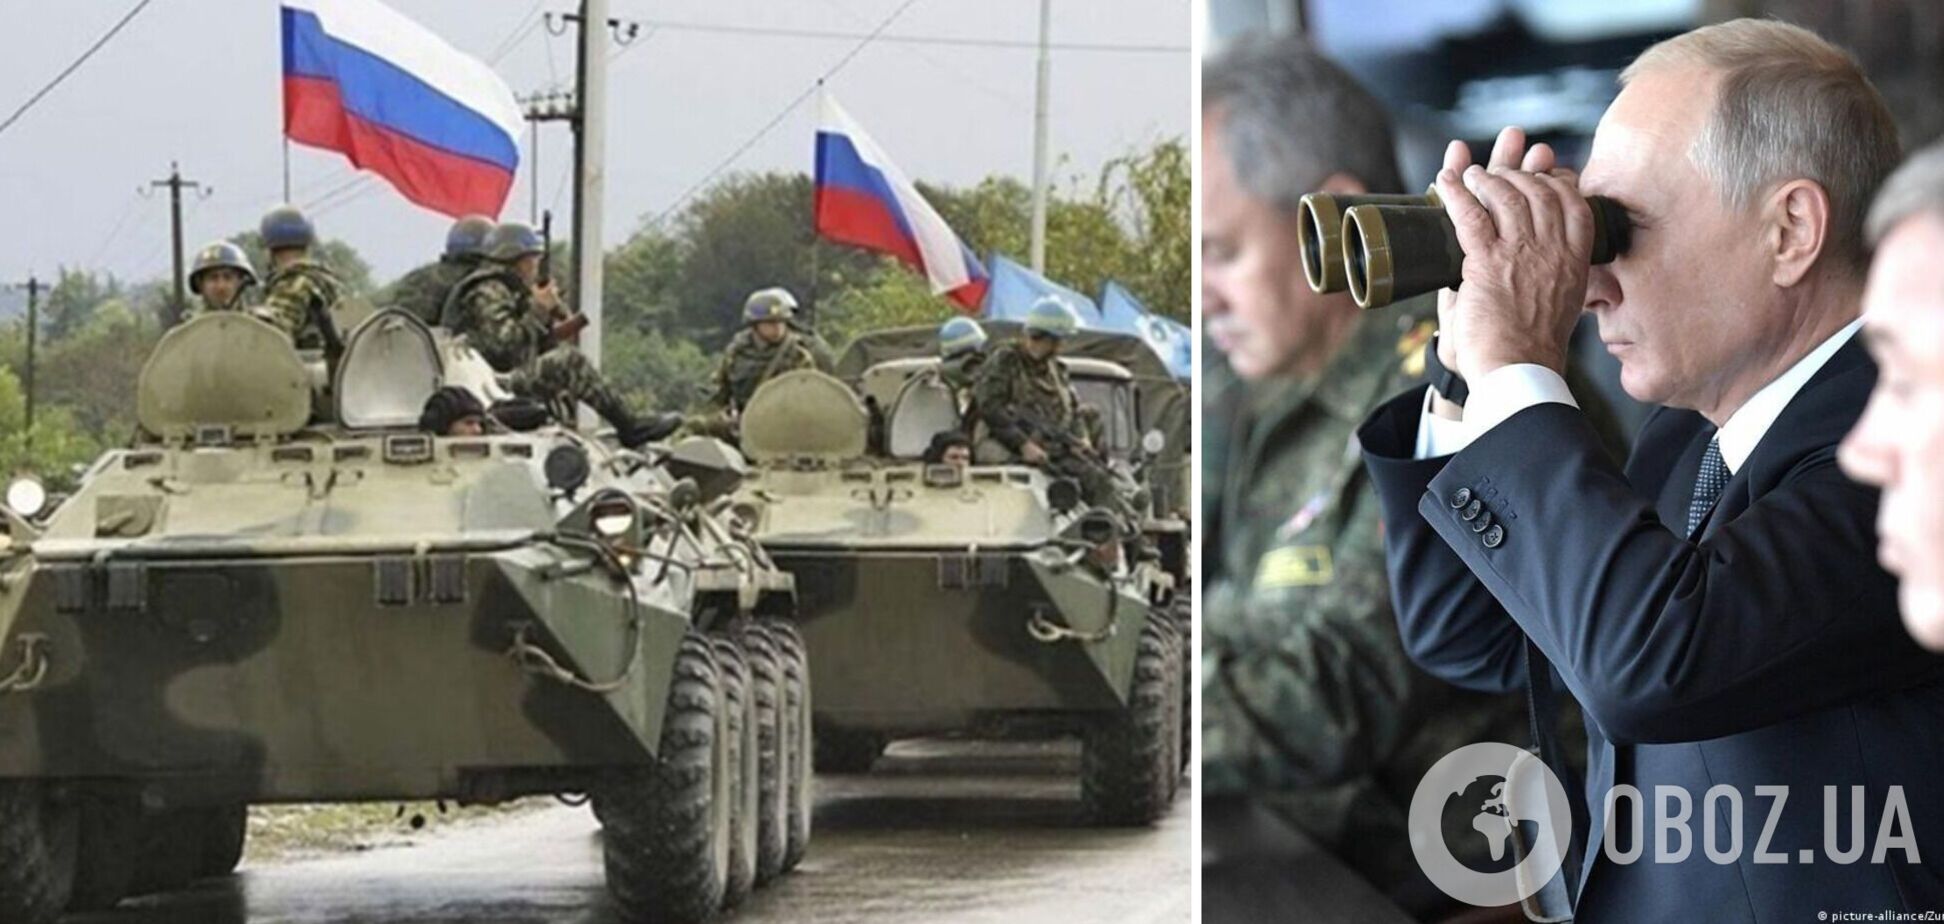 Мобилизация и наступление врага: как работает пропаганда и какие перспективы у Украины